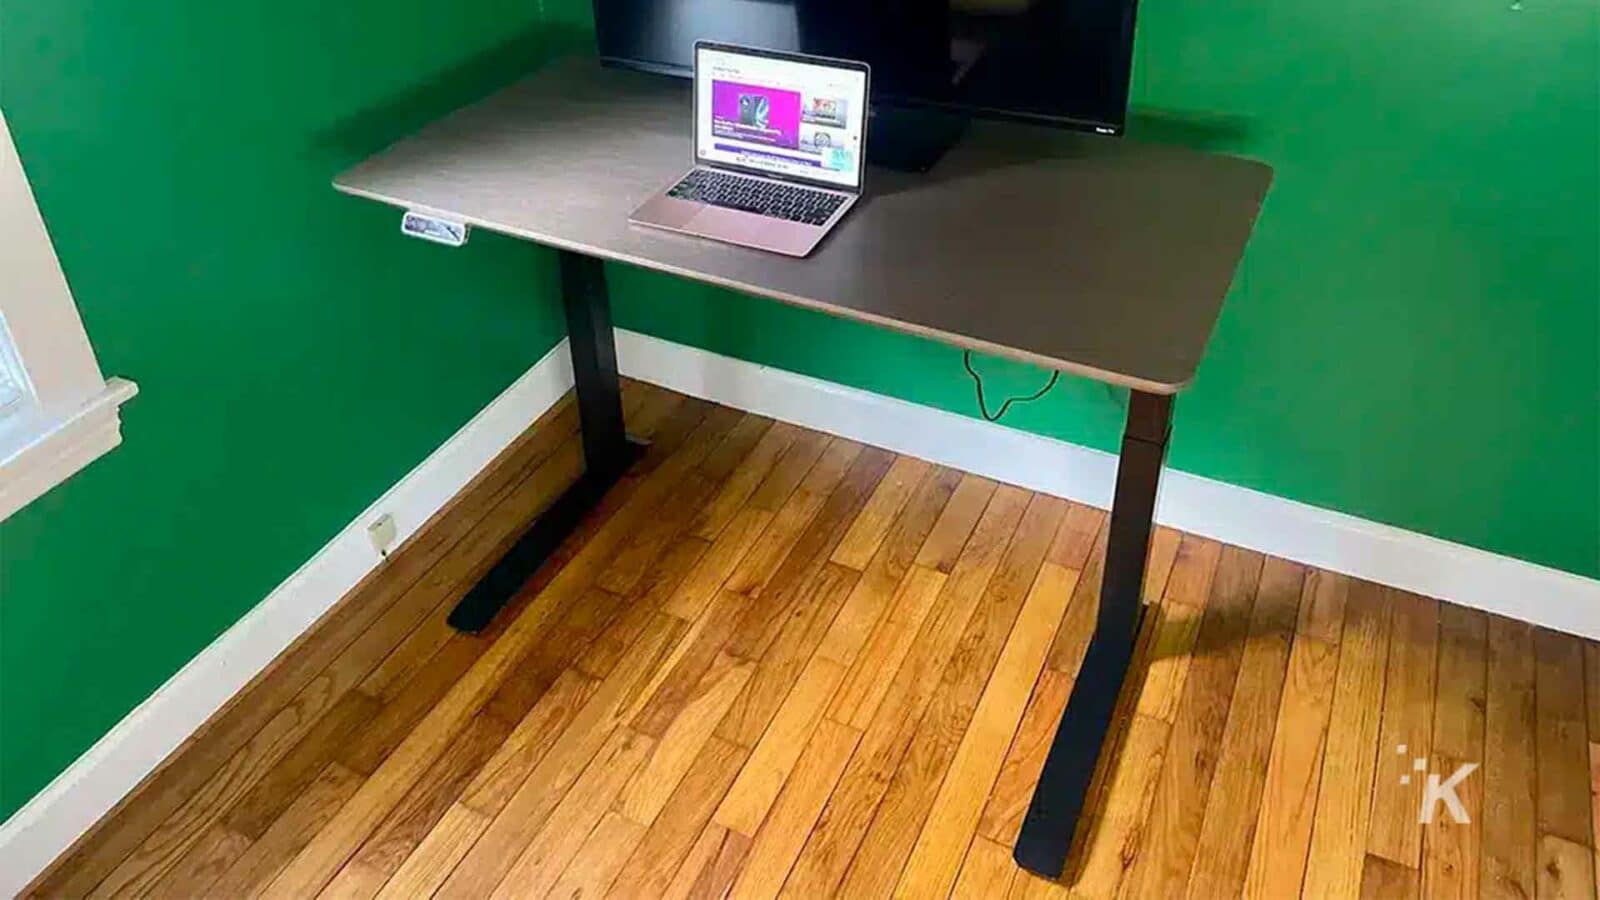 笔记本电脑放在桌子上。Flexisport E7 Premium 站立式办公桌